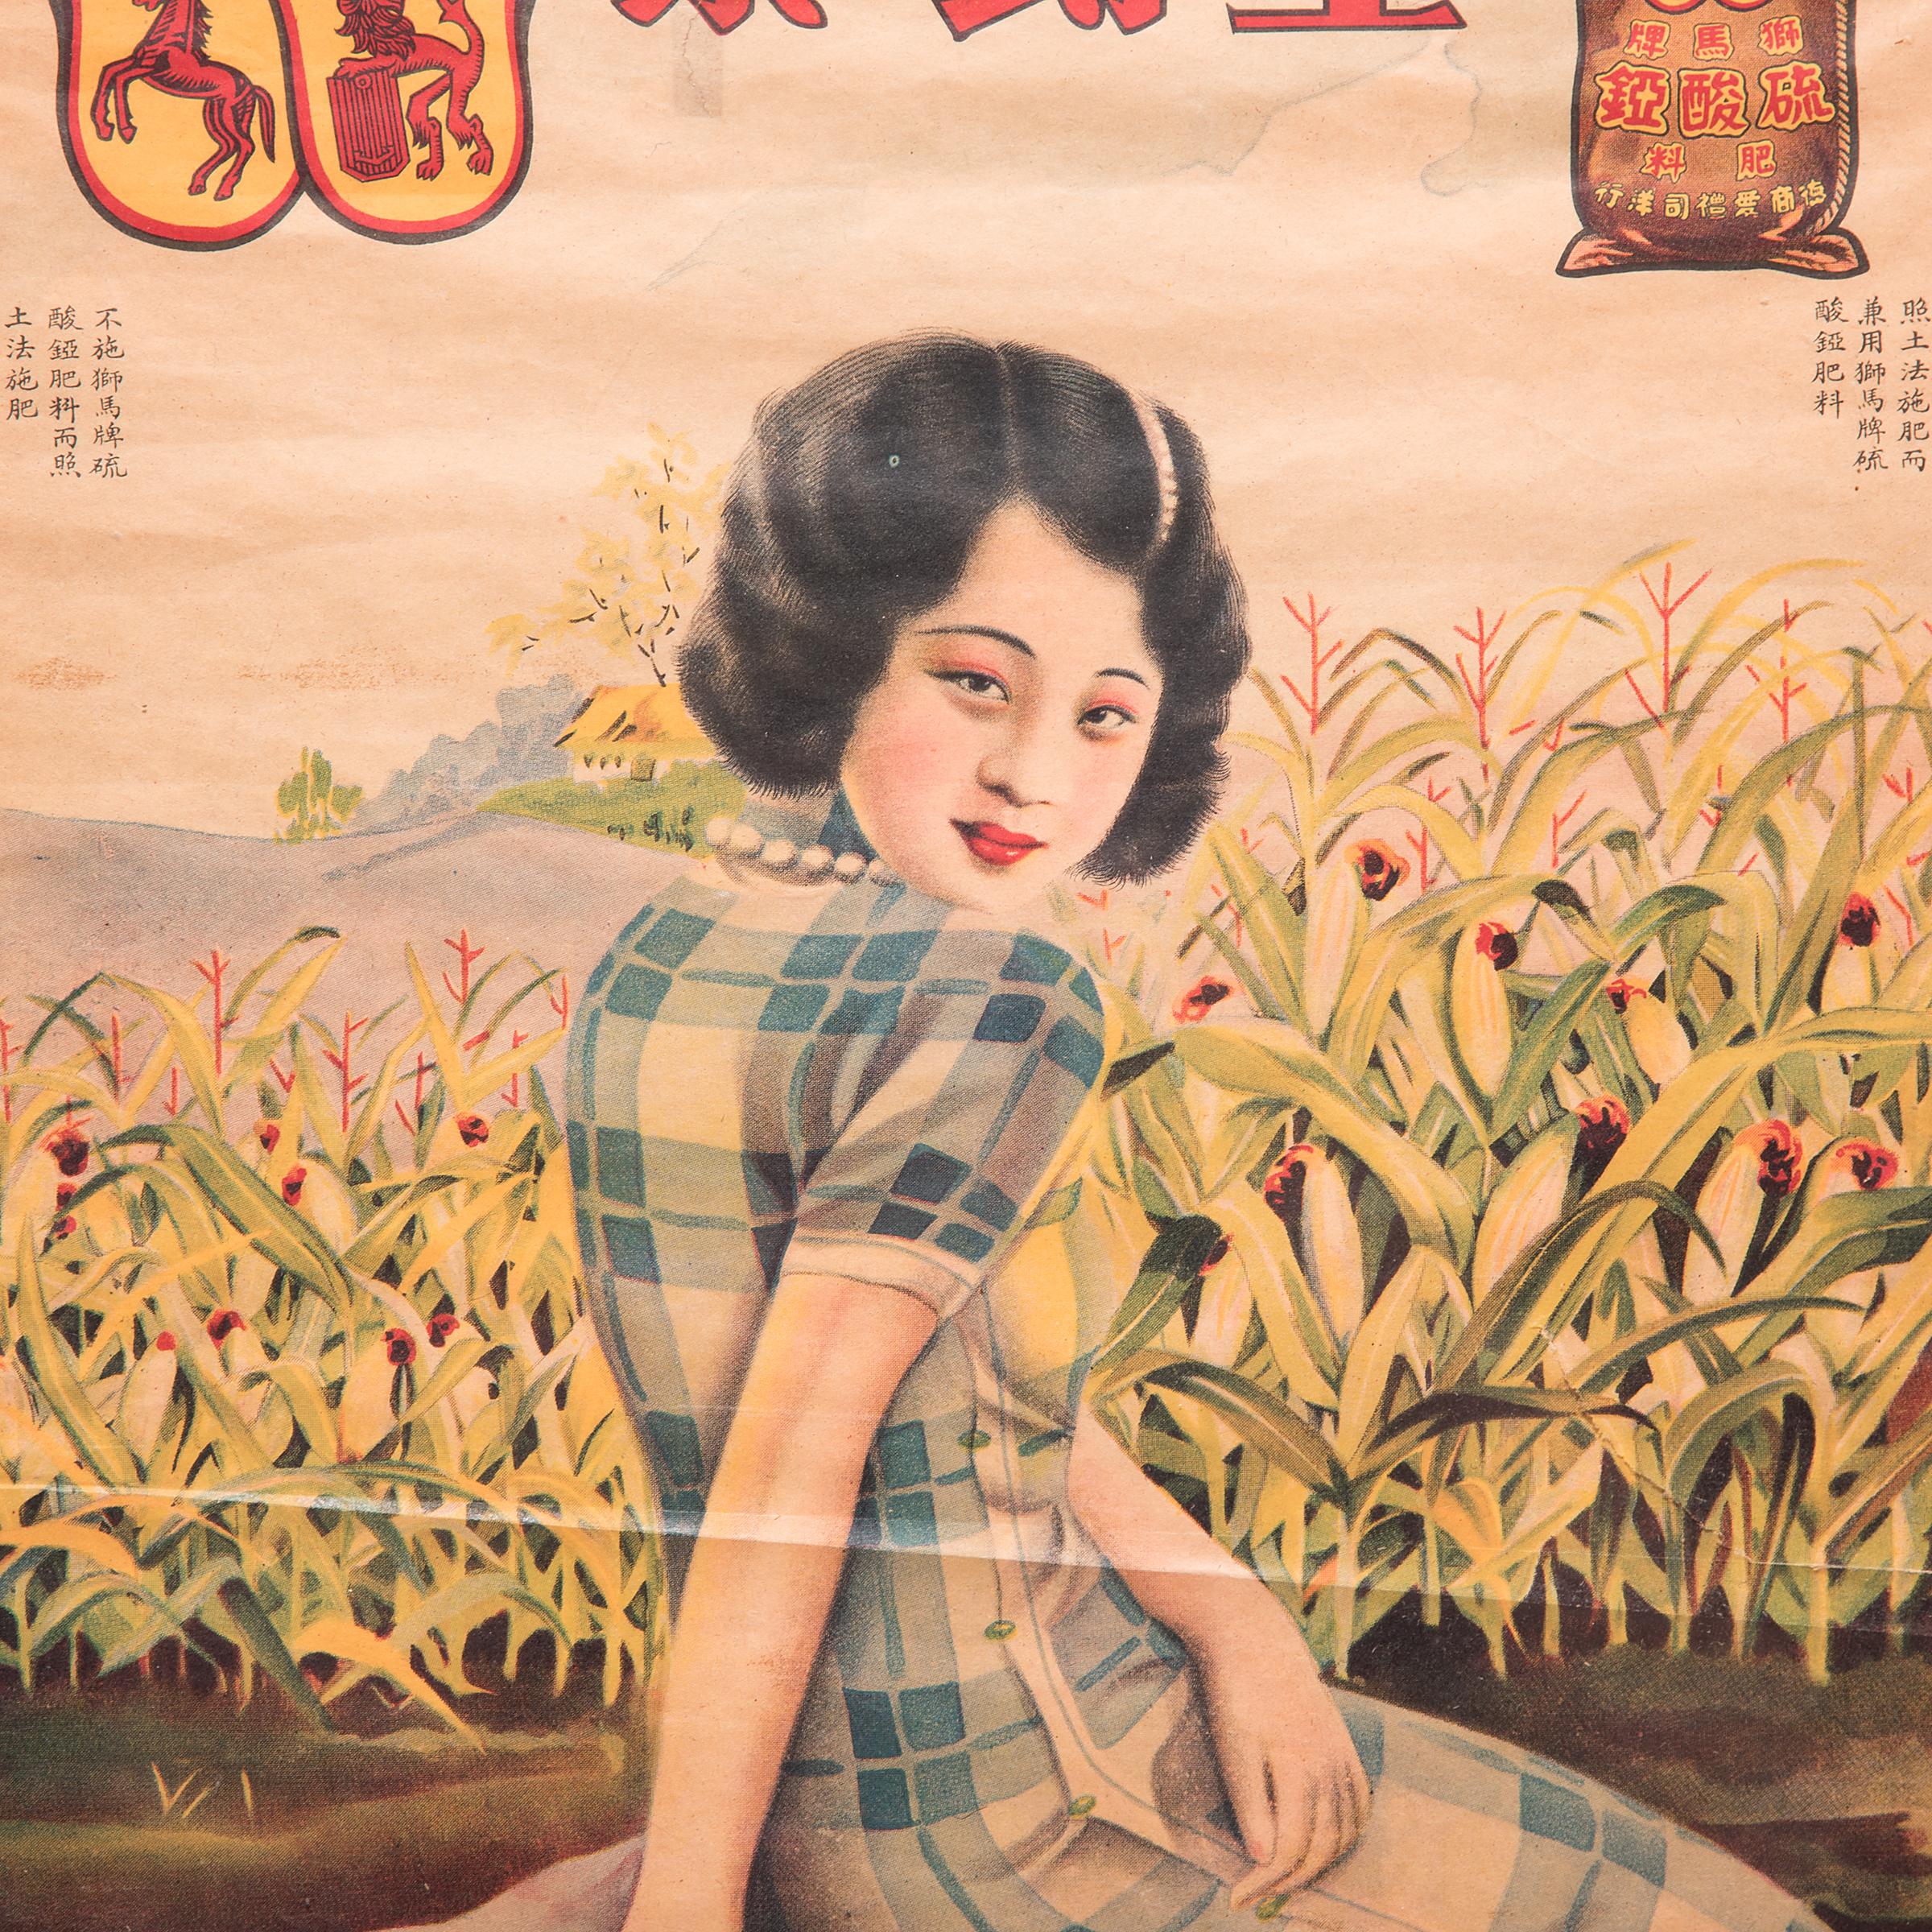 Influencées par la publicité occidentale, les affiches commerciales présentant de belles femmes dans des décors modernes ont gagné en popularité en Chine dans les années 1920 et 1930. Les affiches comme celle-ci en sont venues à symboliser la